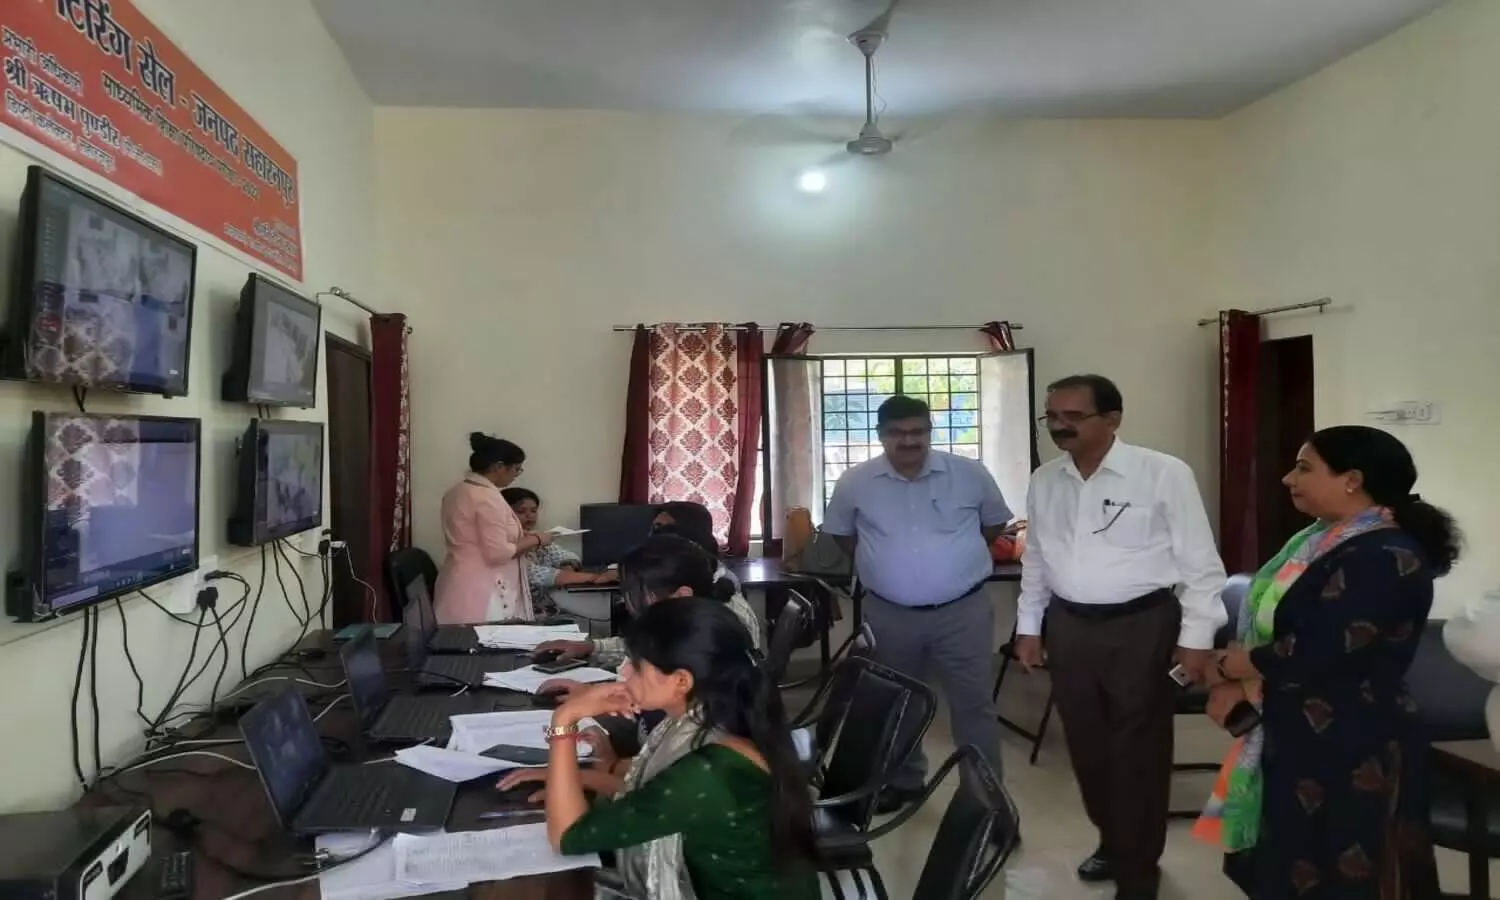 UP Board Exams 2022: सहारनपुर में बोर्ड परीक्षा के लिए सख्त तैयारी, कड़ी निगरानी में होंगे पेपर